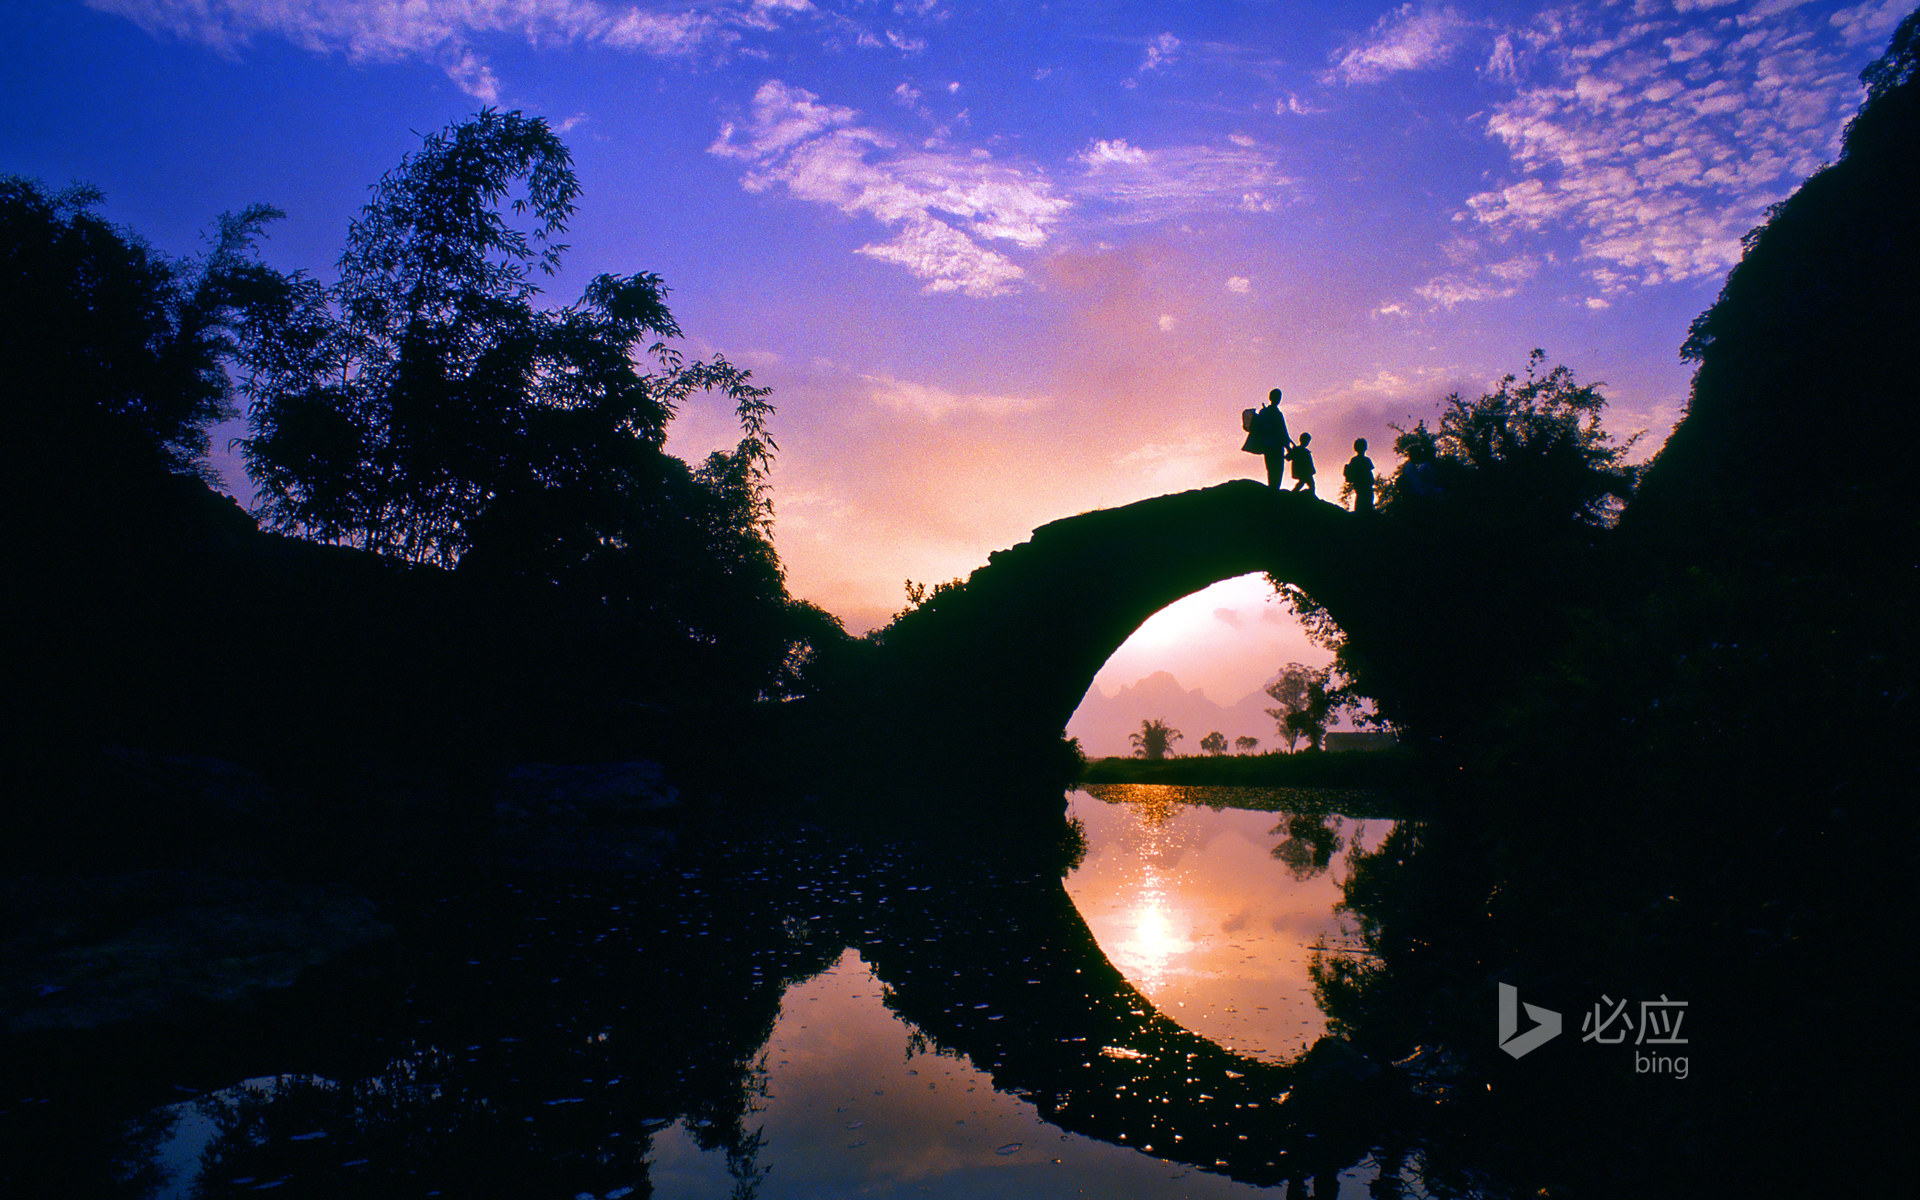 Small bridge in Yingxi, Yingxi, Guangdong